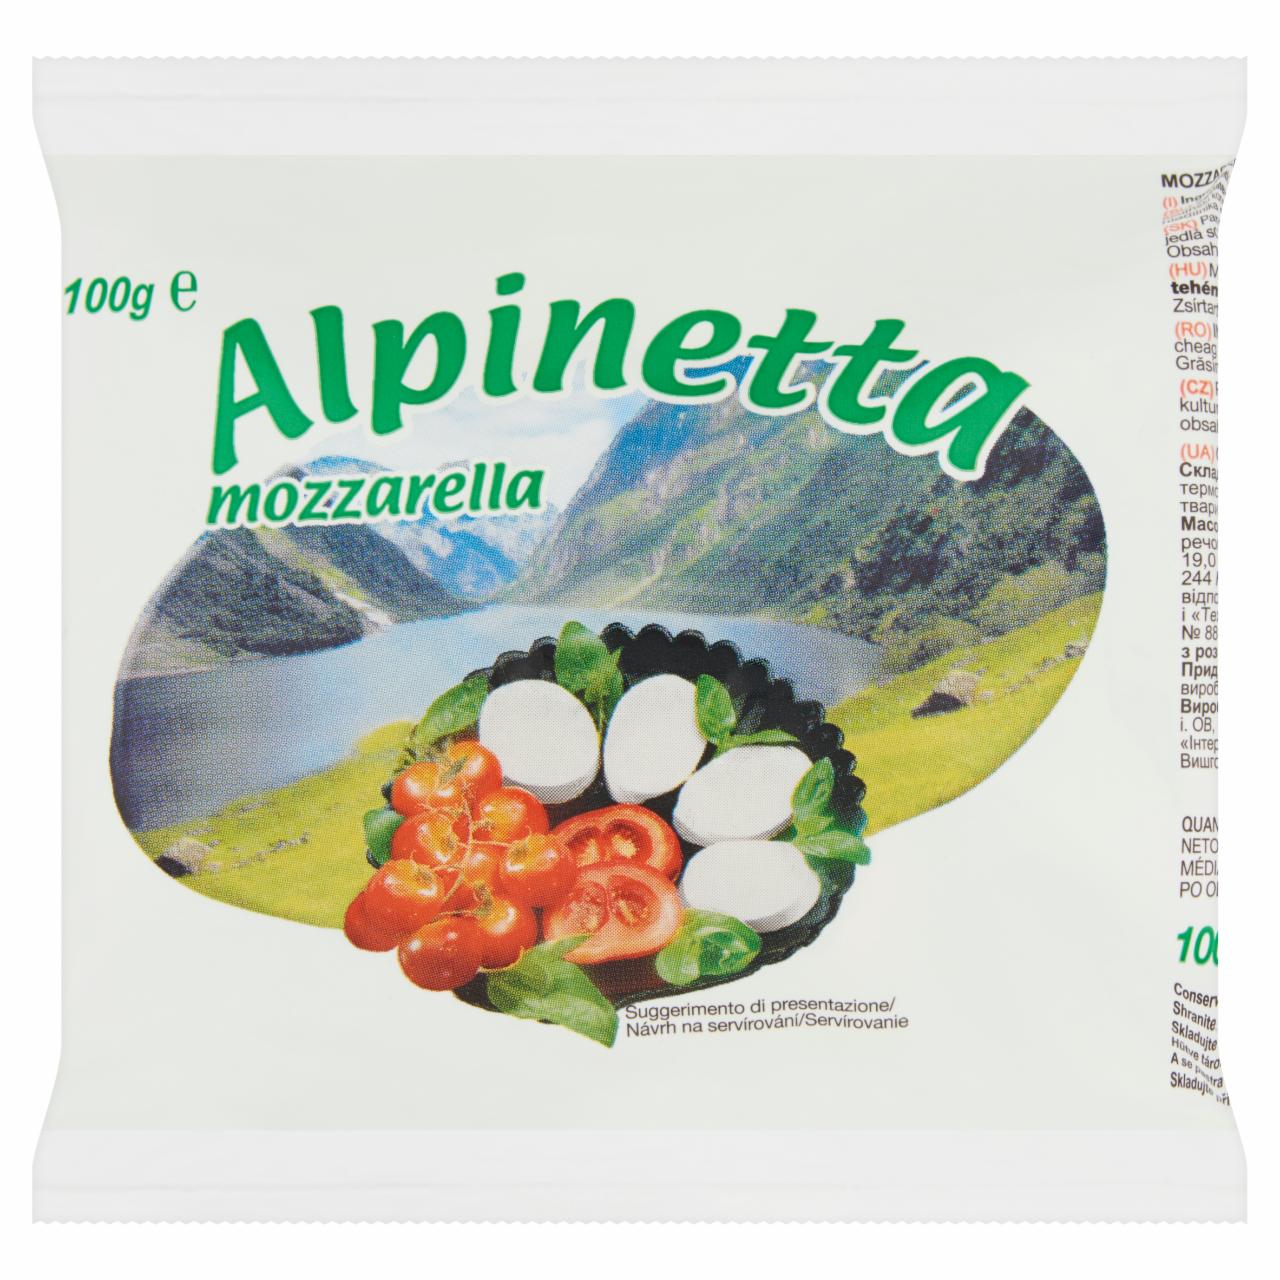 Képek - Alpinetta zsíros lágy mozzarella sajtgolyó sólében 180 g